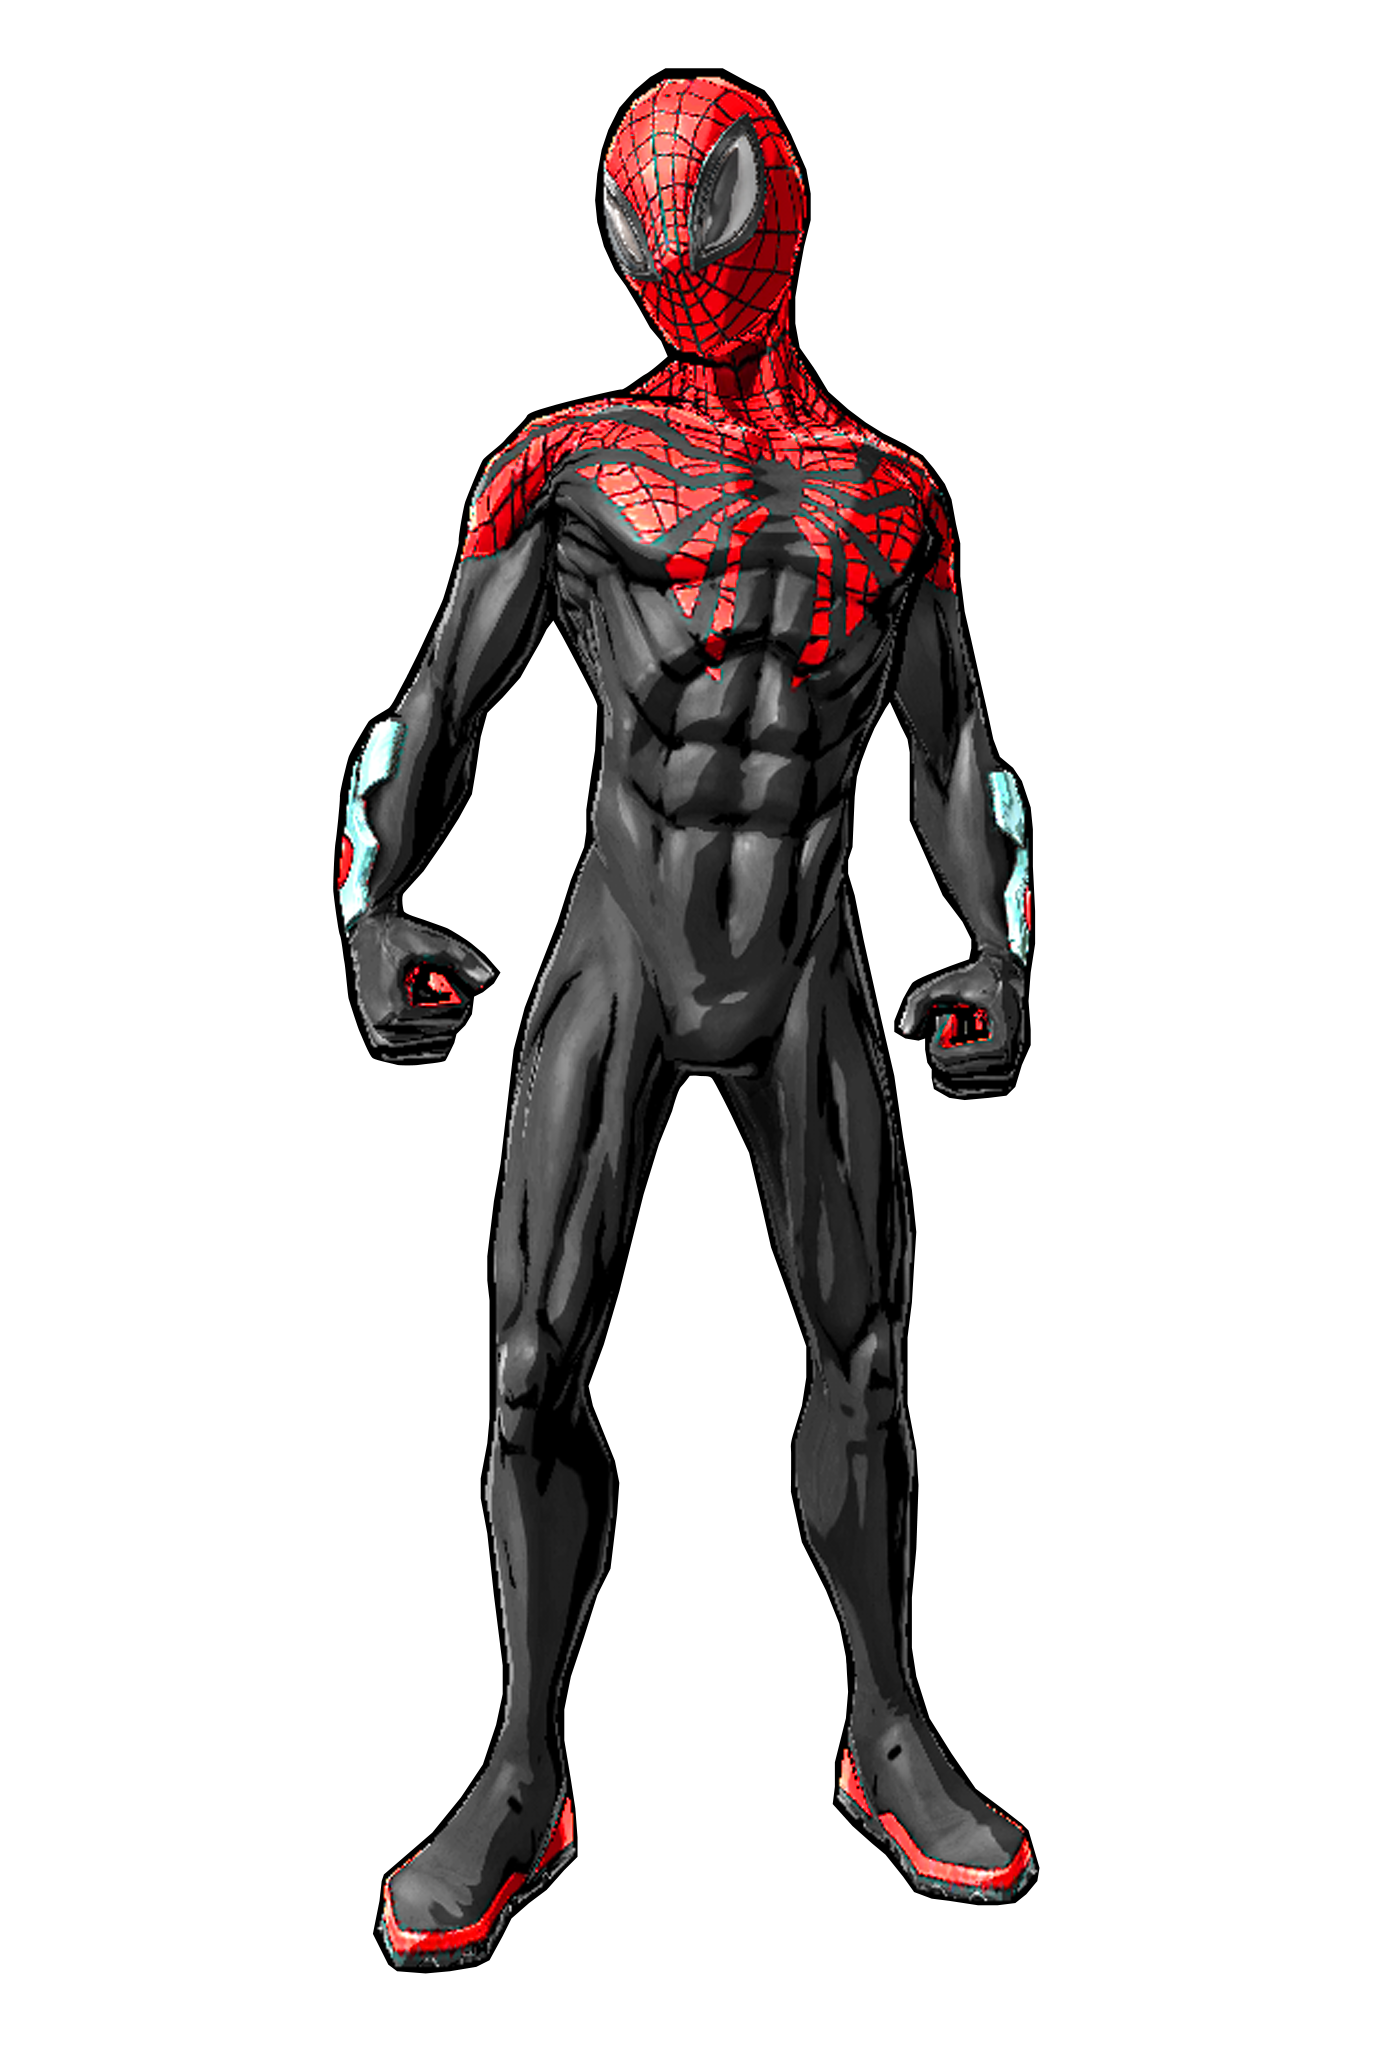 Spider-Man Standing Download Transparent PNG Image